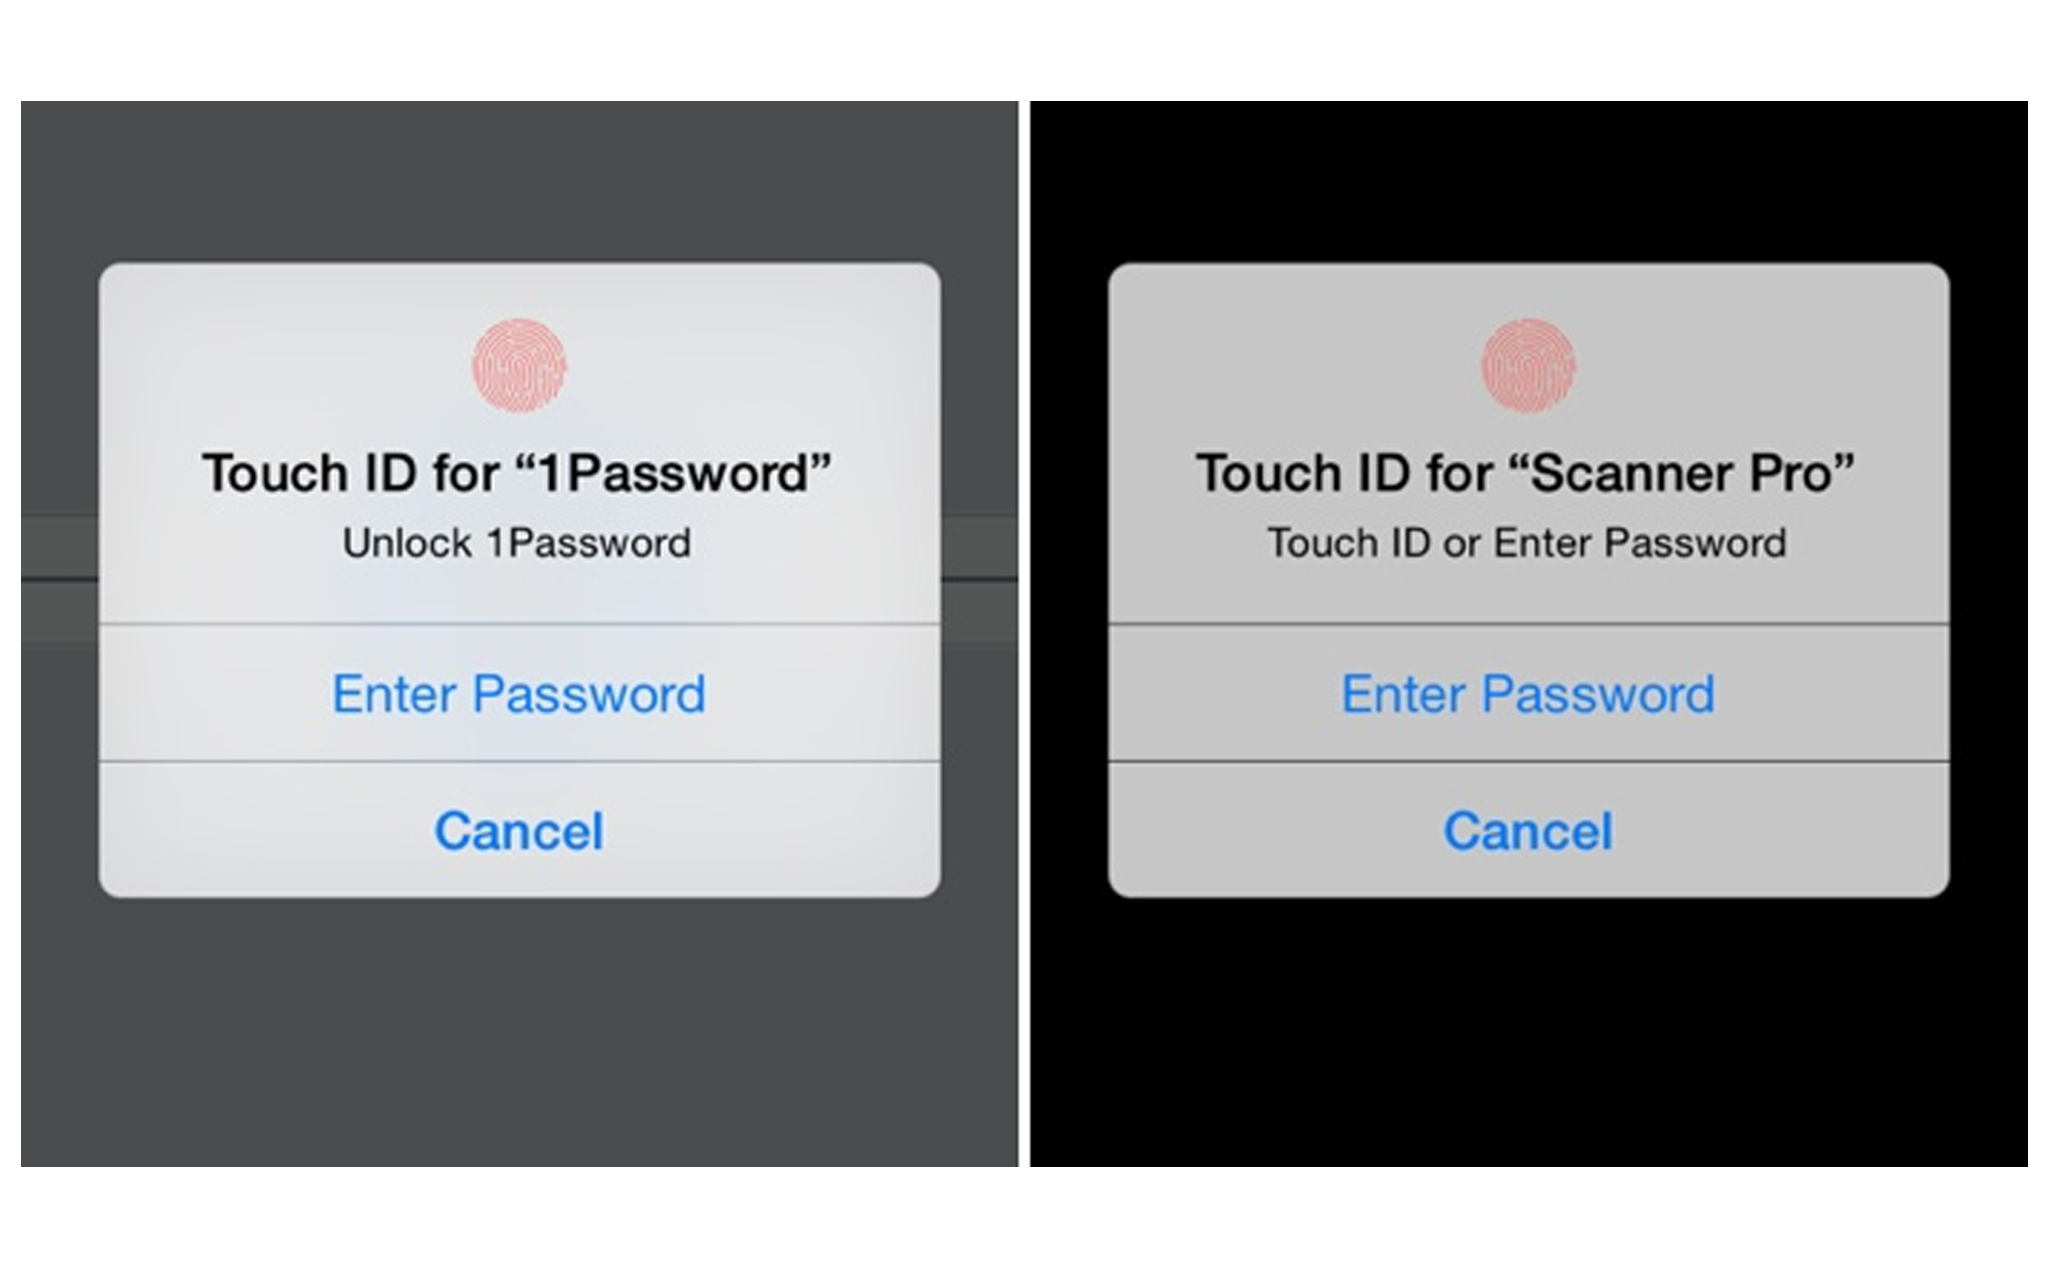 [Hỏi Tinh tế] iOS 13 đang lỗi không hiển thị thông báo Touch ID để truy cập vào ứng dụng bên thứ ba?